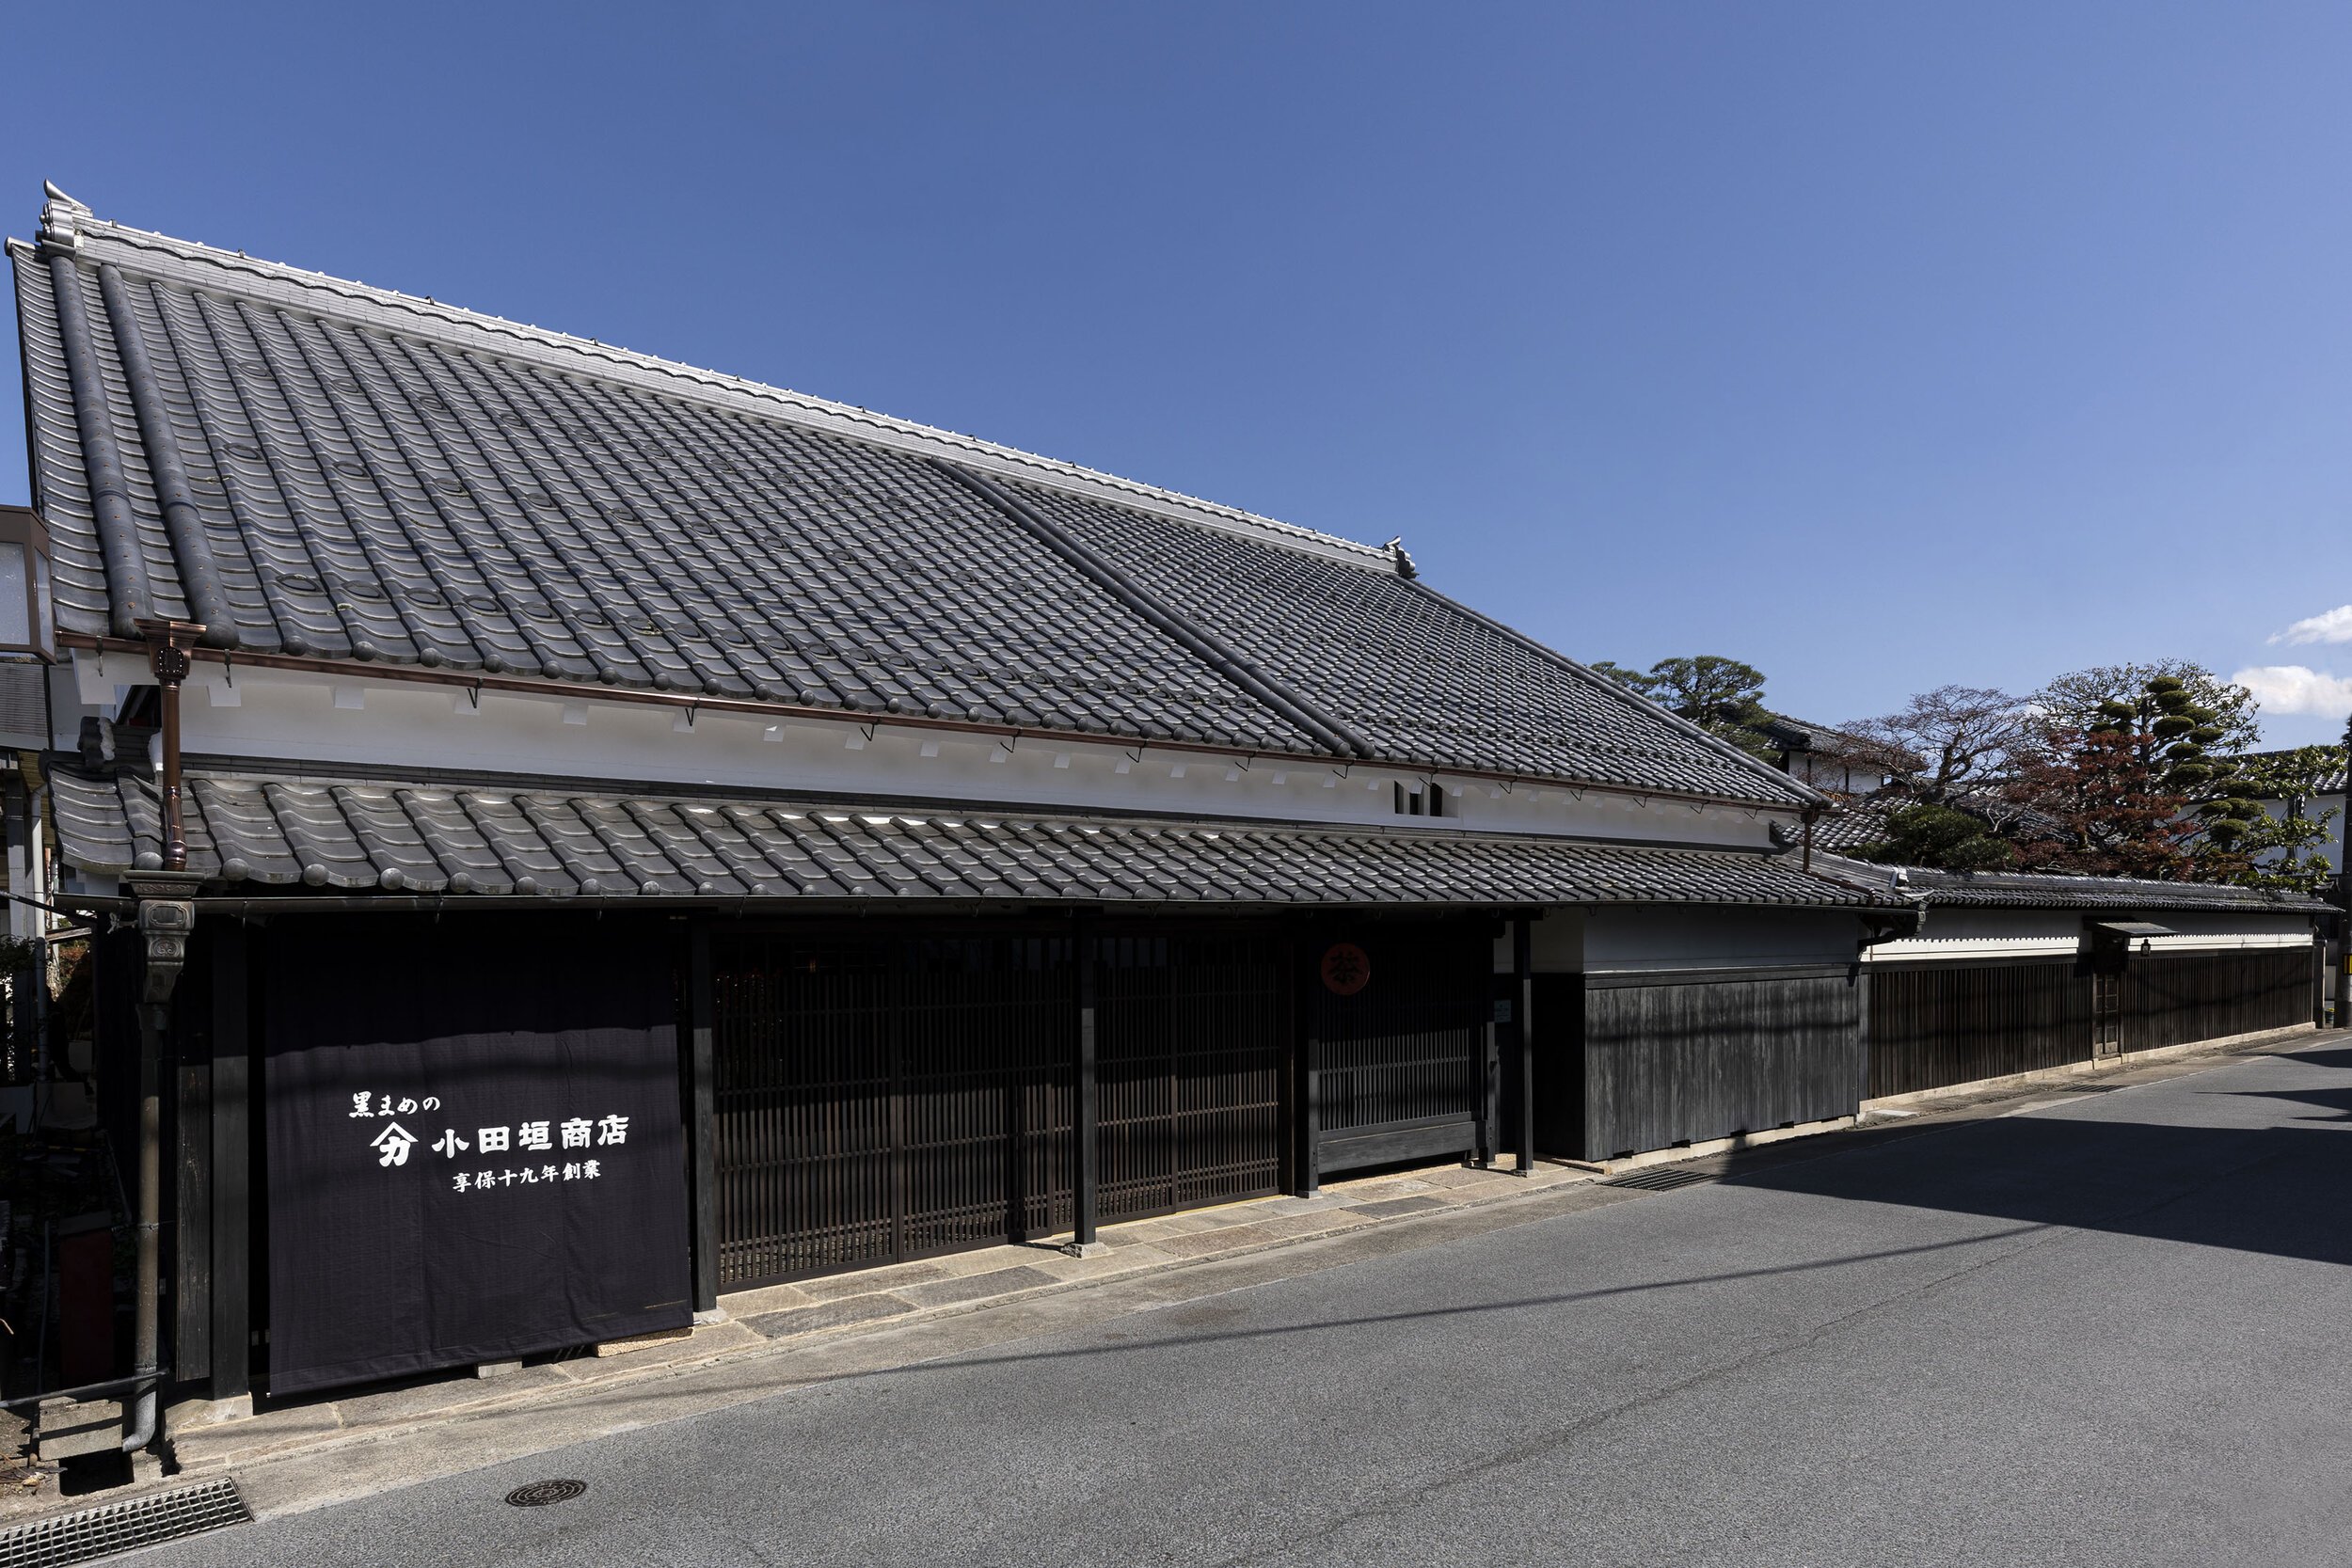  杉本博司と榊田倫之が率いる新素材研究所がデザインを手掛けた小田垣商店本店の外観   